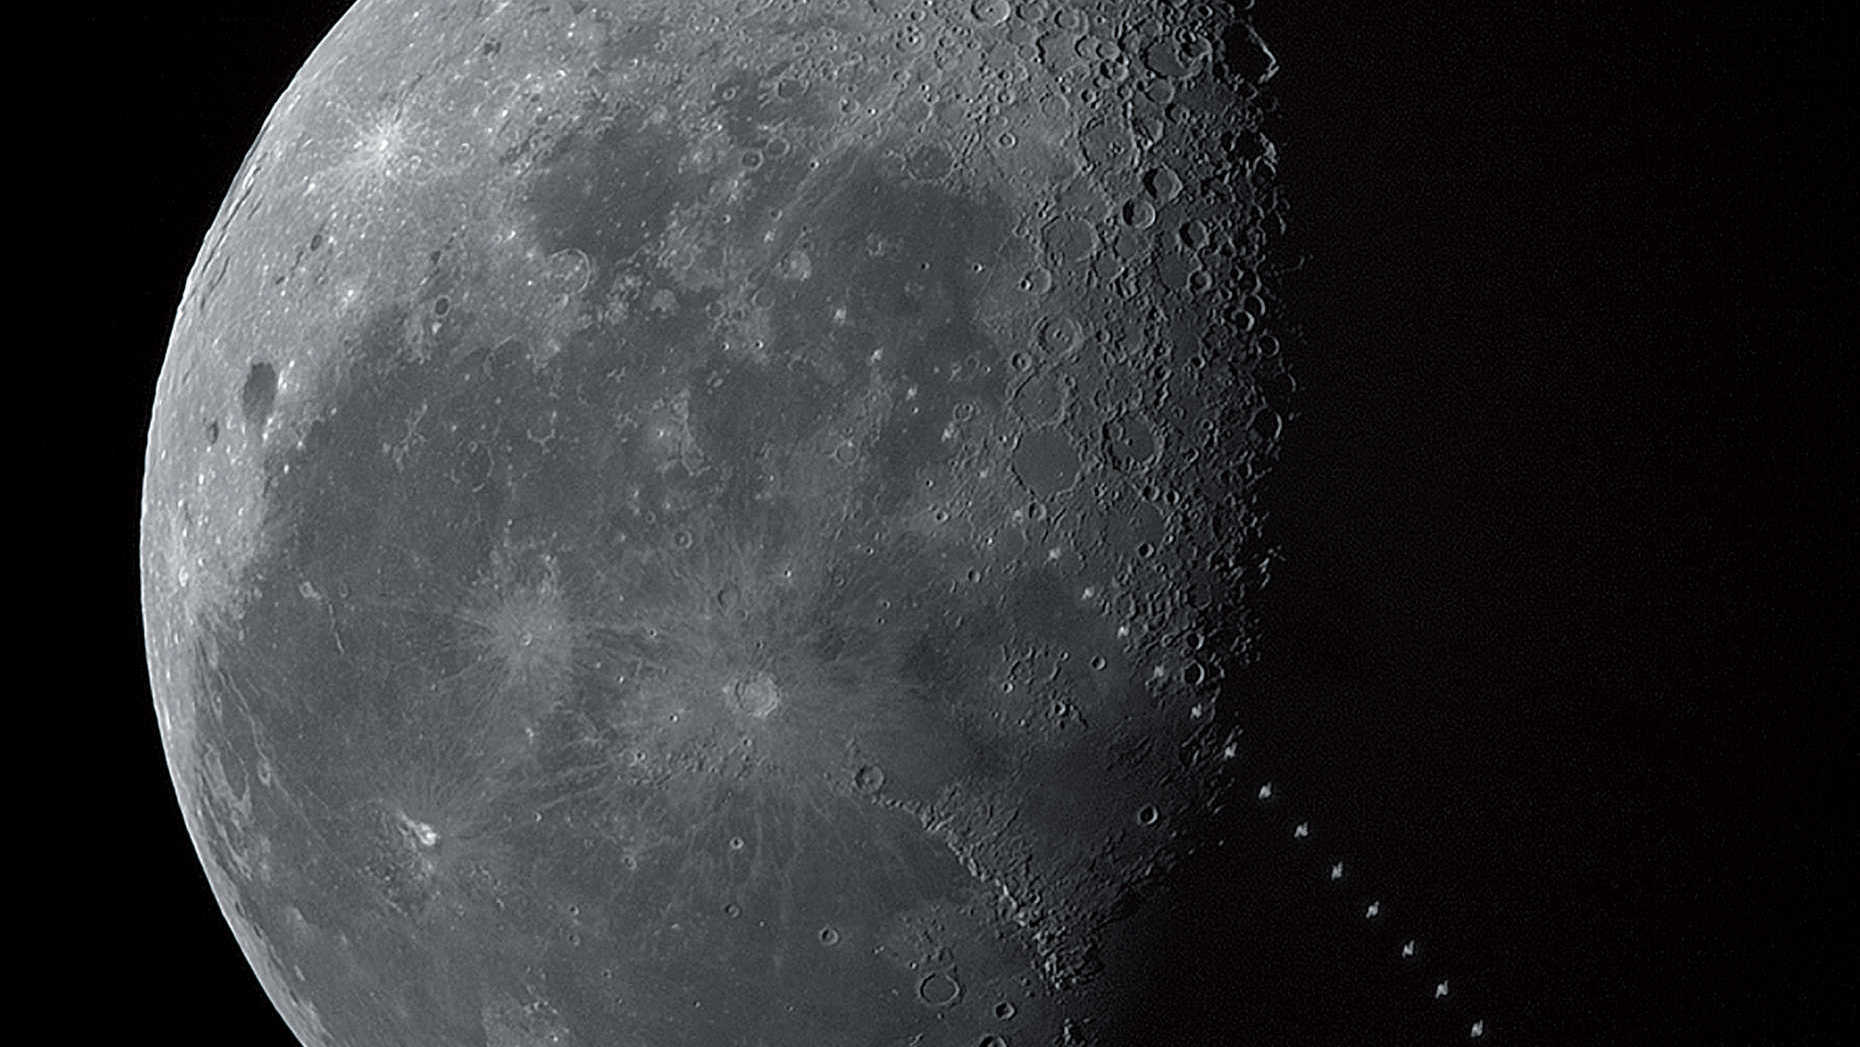 Le 17/05/2017, aux premières heures d’une claire journée d’été,  au-dessus de Todtnau au sud de la Forêt Noire, nous avons pu photographier le transit de la Station Spatiale Internationale, ISS, passant devant la Lune décroissante : le transit a eu lieu à 08:05:49 (UTC), au moment où la Lune était à 19,4 degrés au-dessus de l’horizon sud-sud-ouest. La distance de l’ISS de magnitude 2,3 par rapport au site d'observation était de 1 016,7 km, si bien que le transit dura 1,2 seconde et que la station spatiale apparut relativement petite. La photo est un montage composé de 51 images, dans Photoshop. U. Dittler